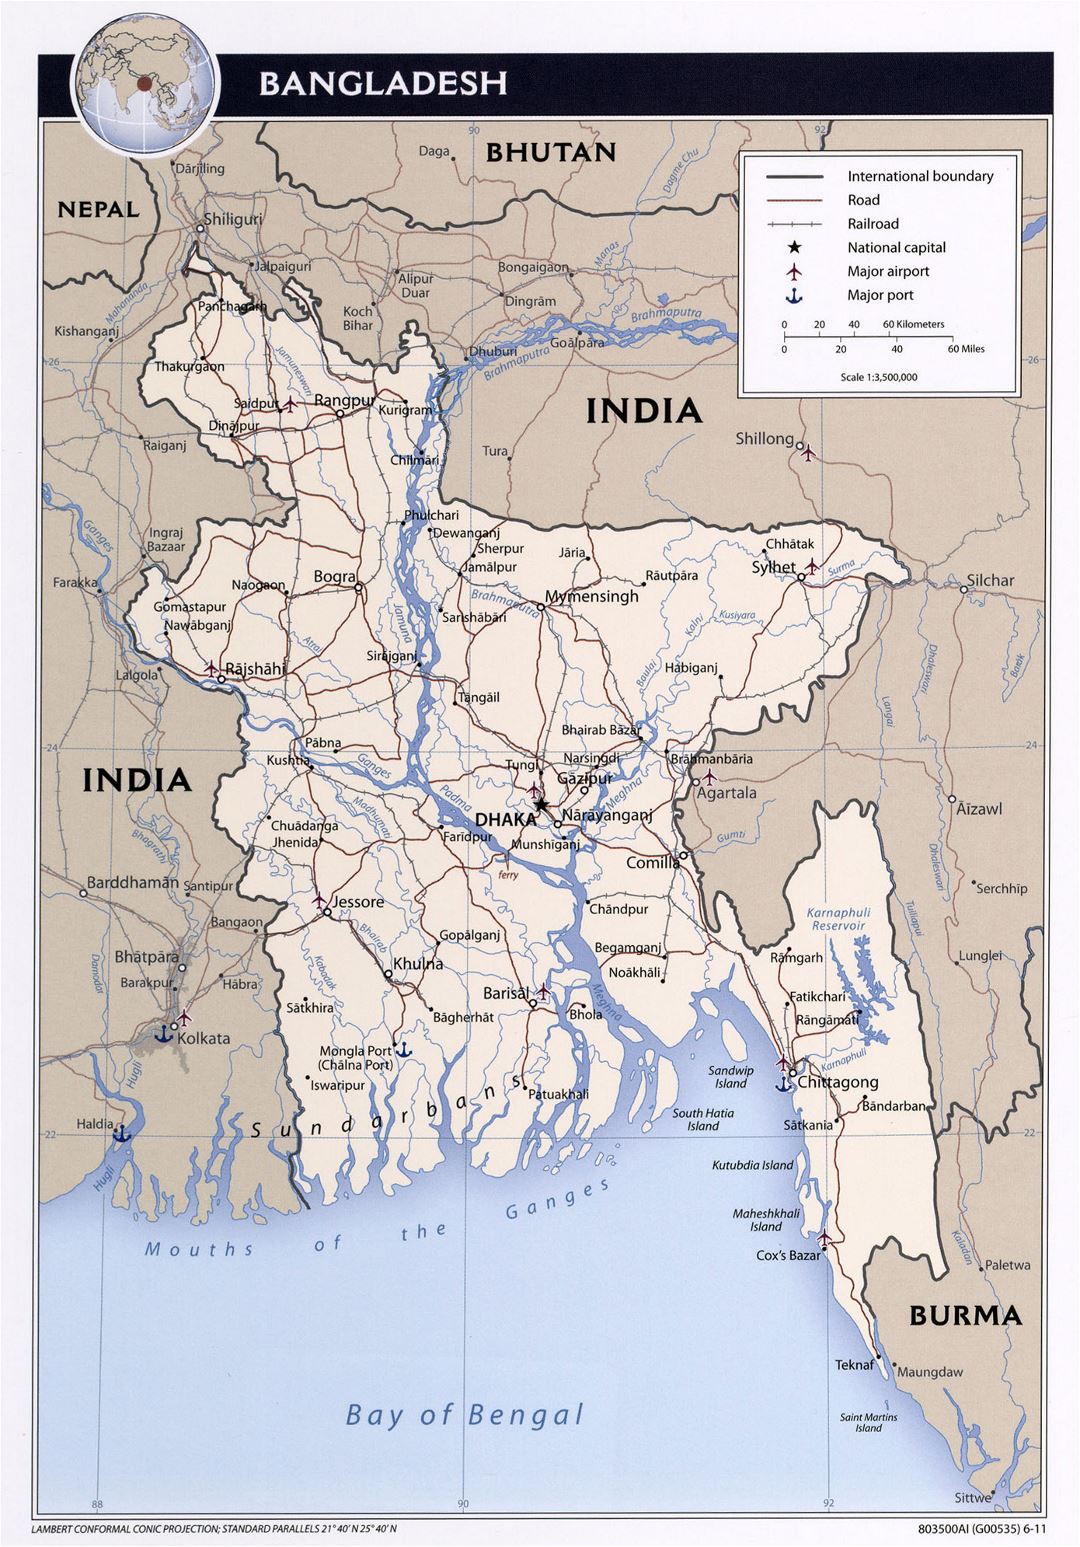 Большая детальная политическая карта Бангладеш с дорогами, железными дорогами, крупными городами и аэропортами - 2011